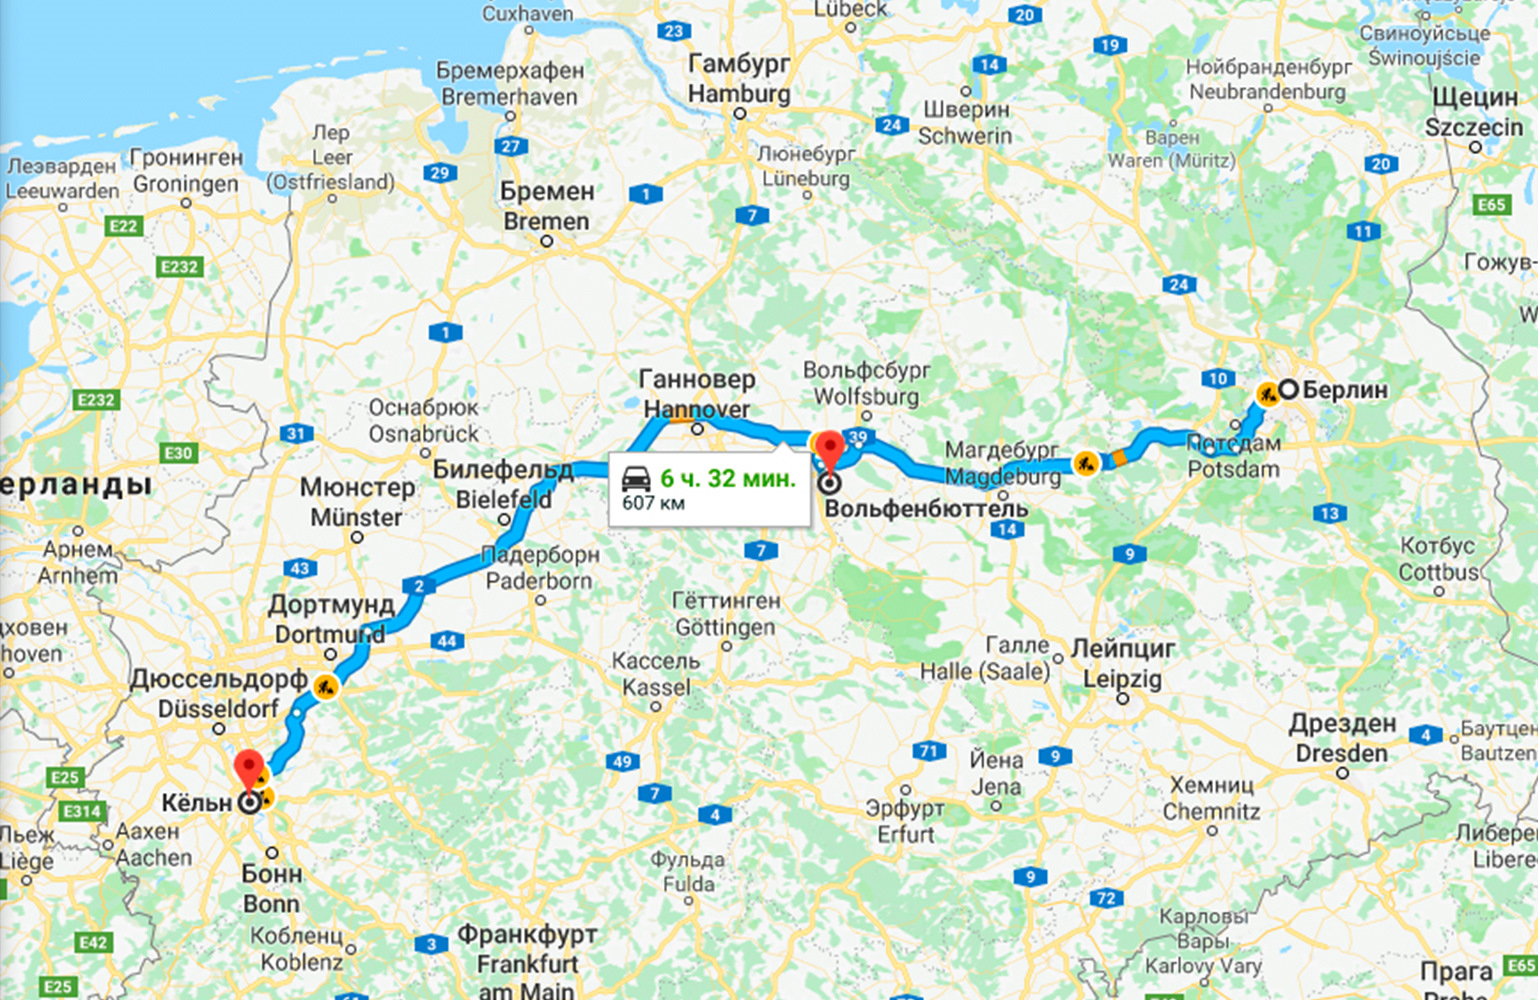 Расстояние от праги до каловых вар на автобусе и на машине: сколько ехать в км и по времени на такси в чехии